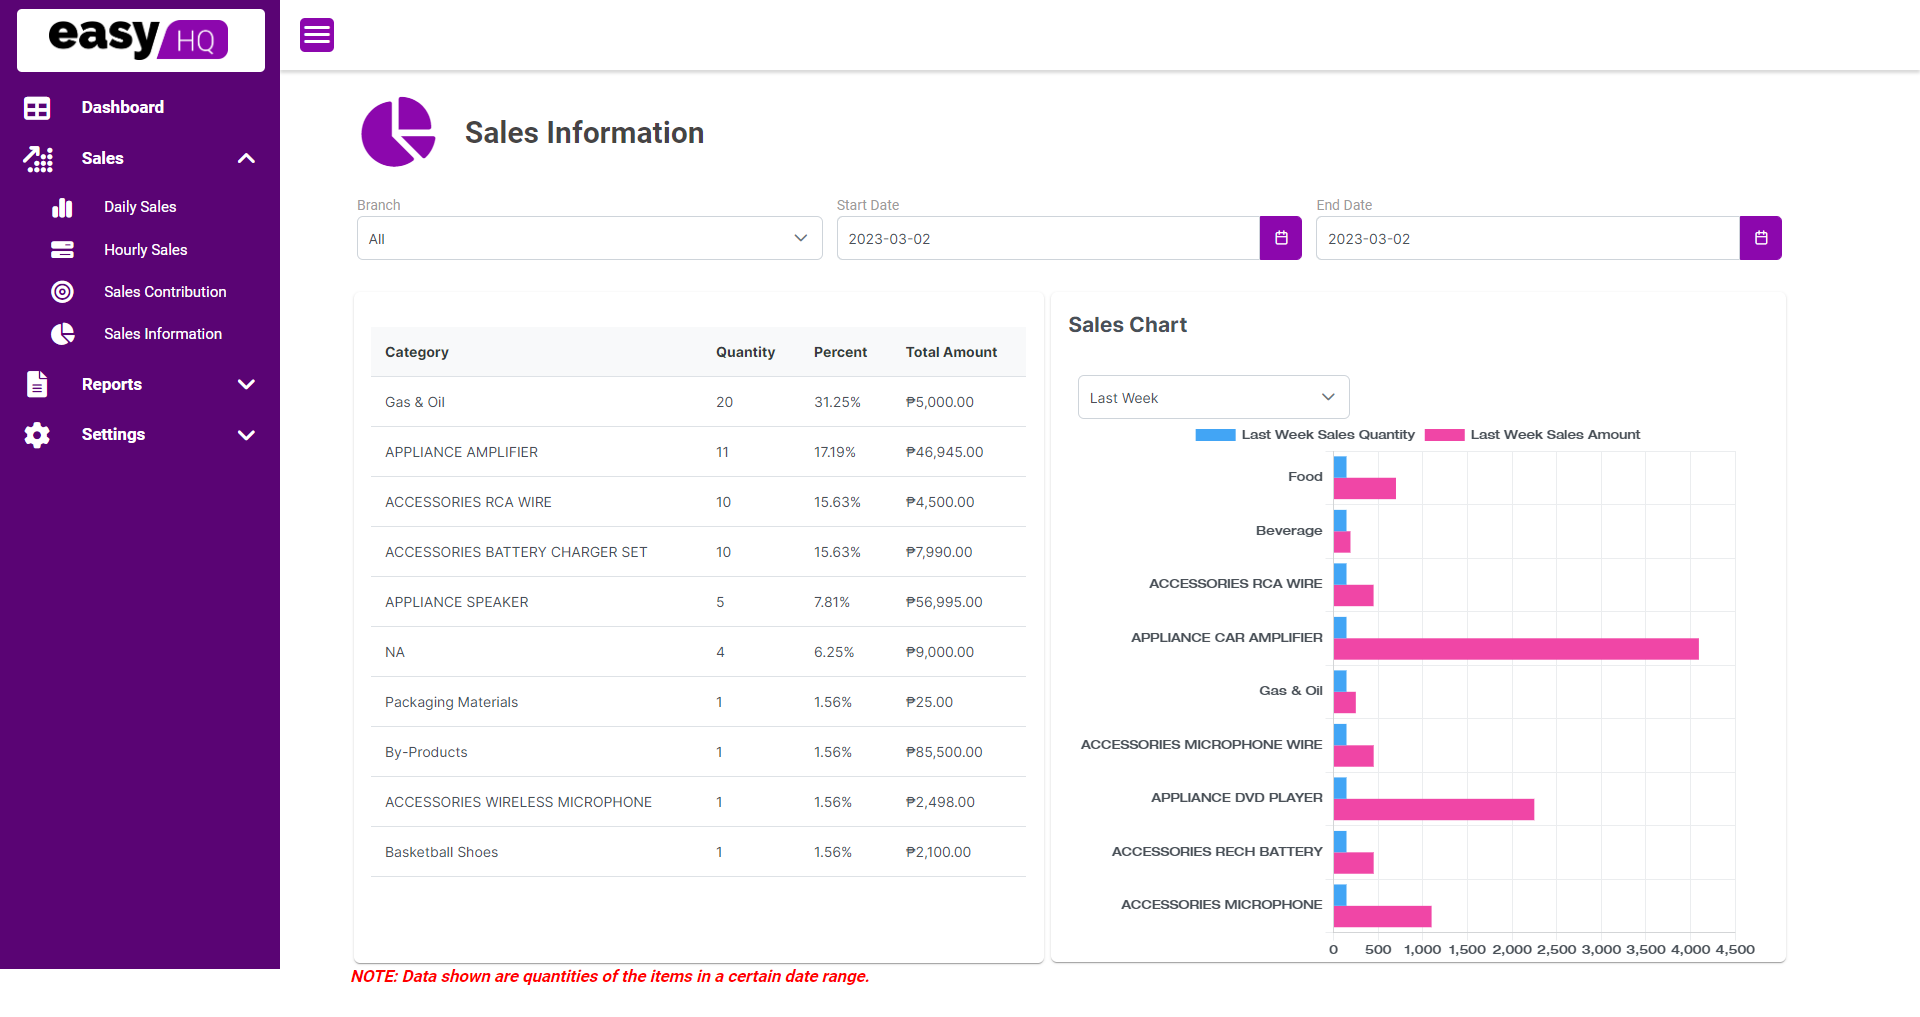 easyHQ Sales Information